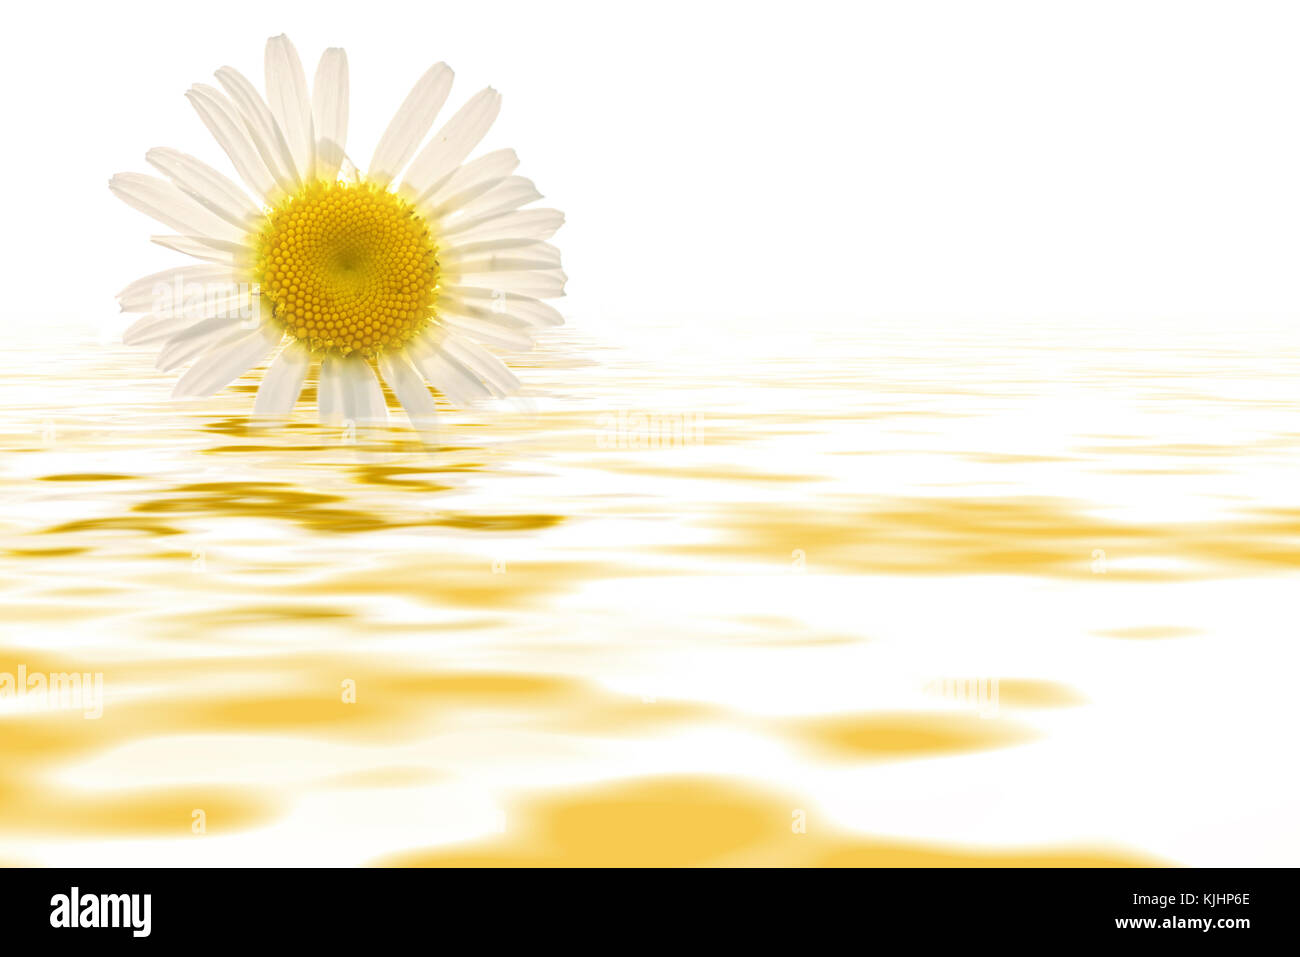 Abstract sfondo floreale con delicate Daisy bianca fiore close-up su uno sfondo bianco con la riflessione in acqua Foto Stock